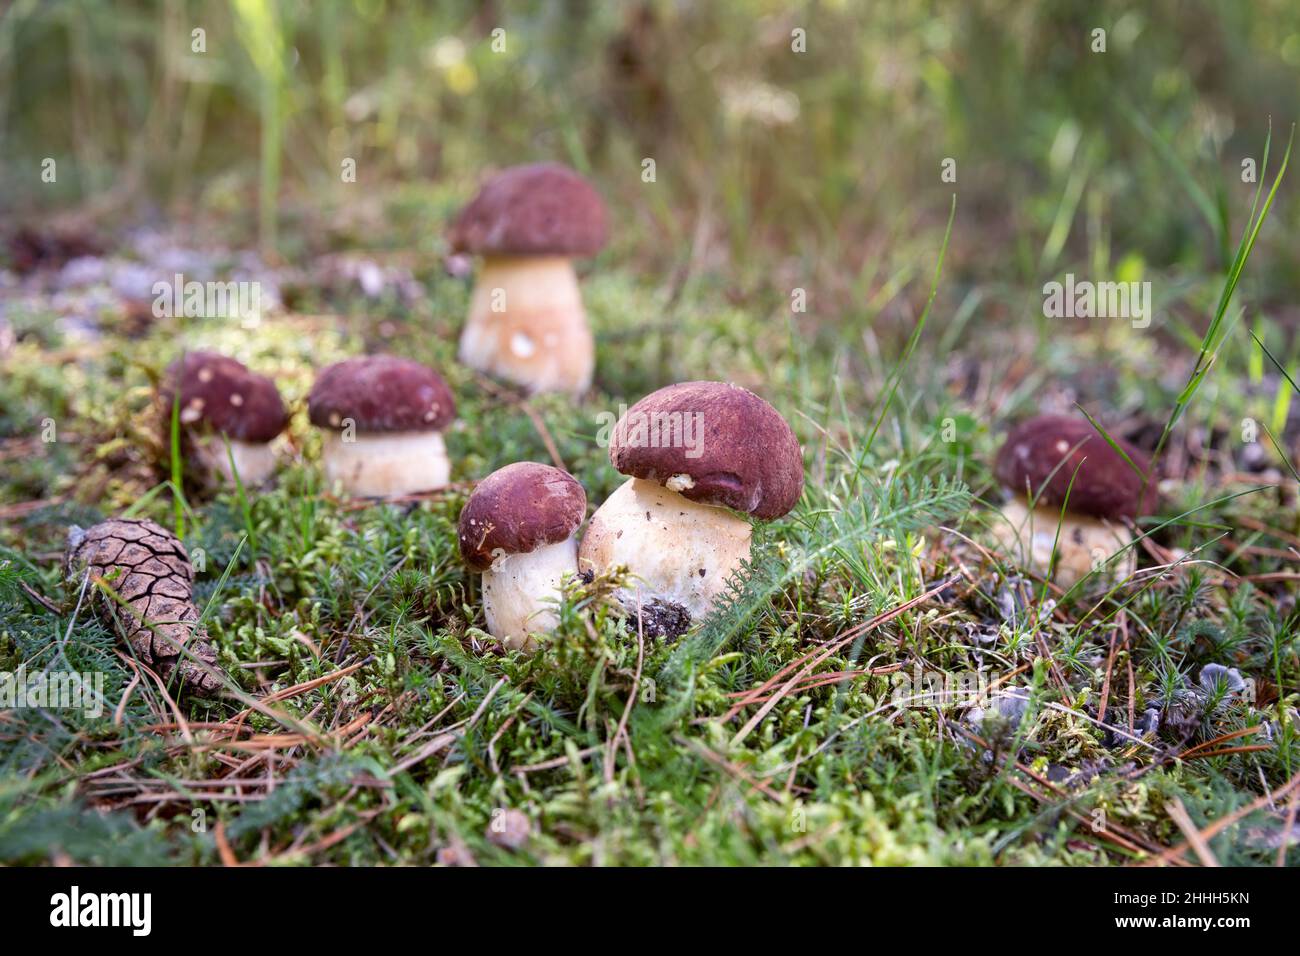 Groupe de petits champignons Boletus edulis dans la forêt d'automne Banque D'Images